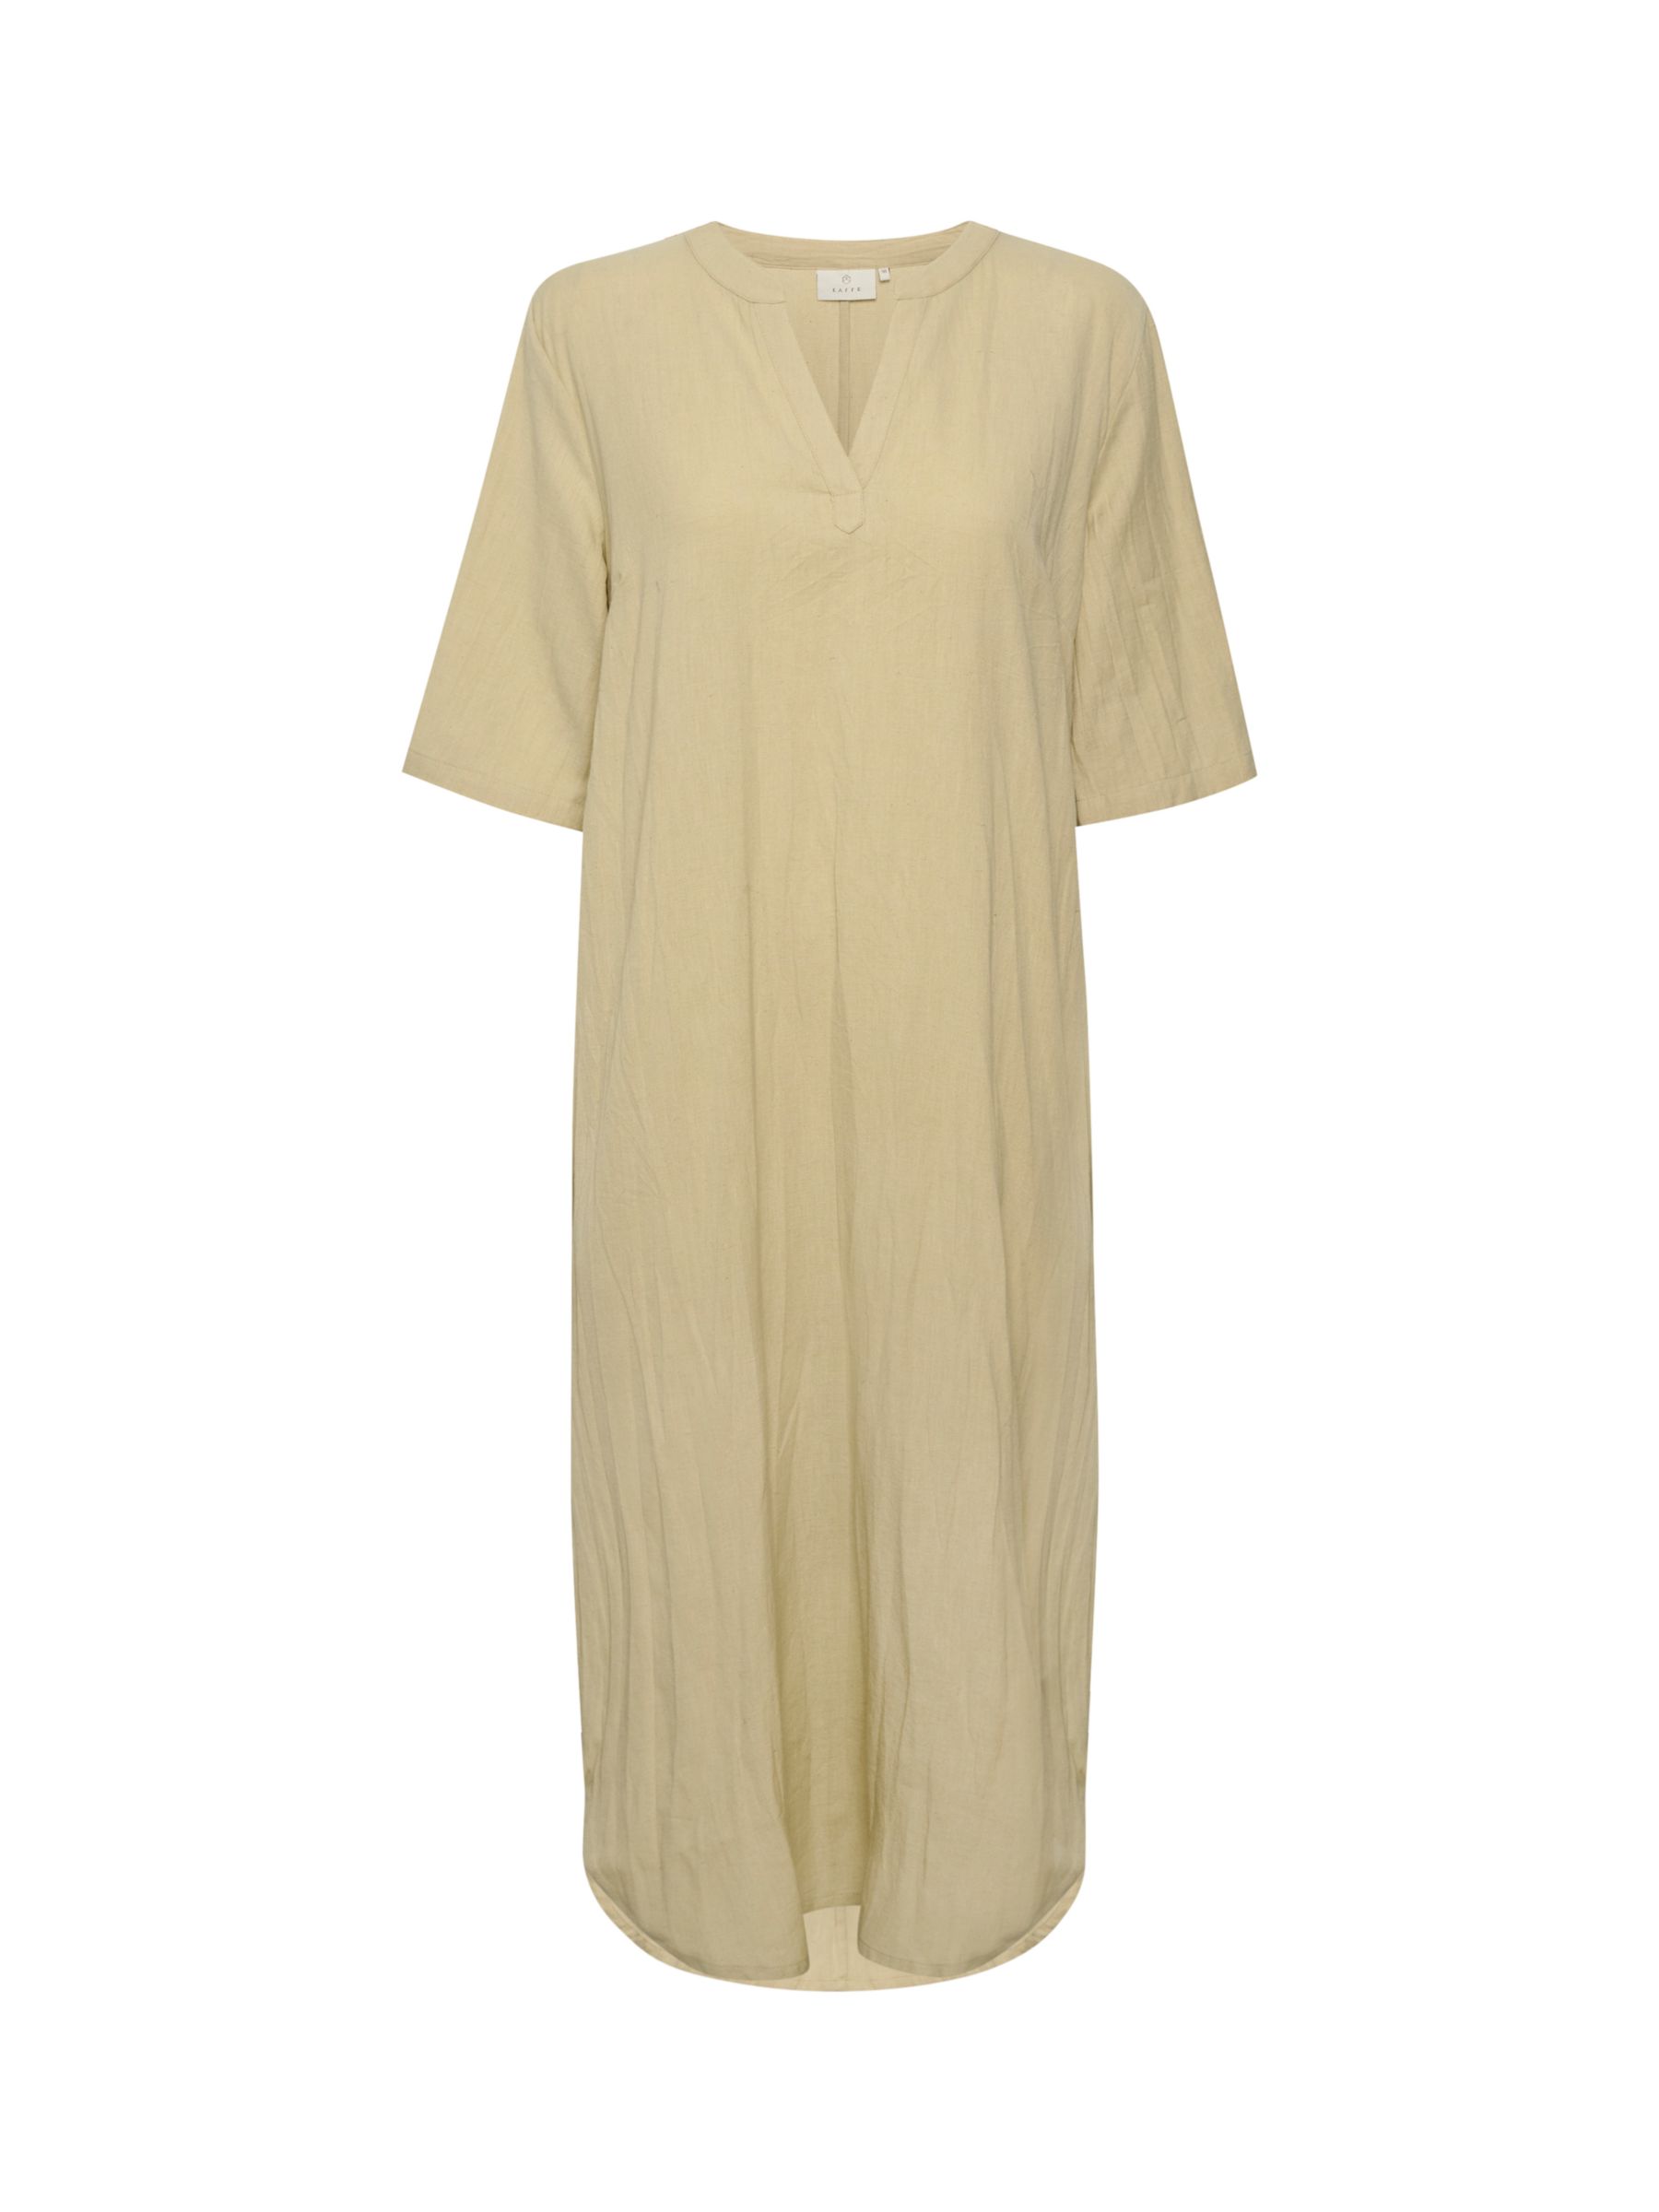 KAFFE Majse Cotton Linen Blend Kaftan Dress, Feather Grey, 8